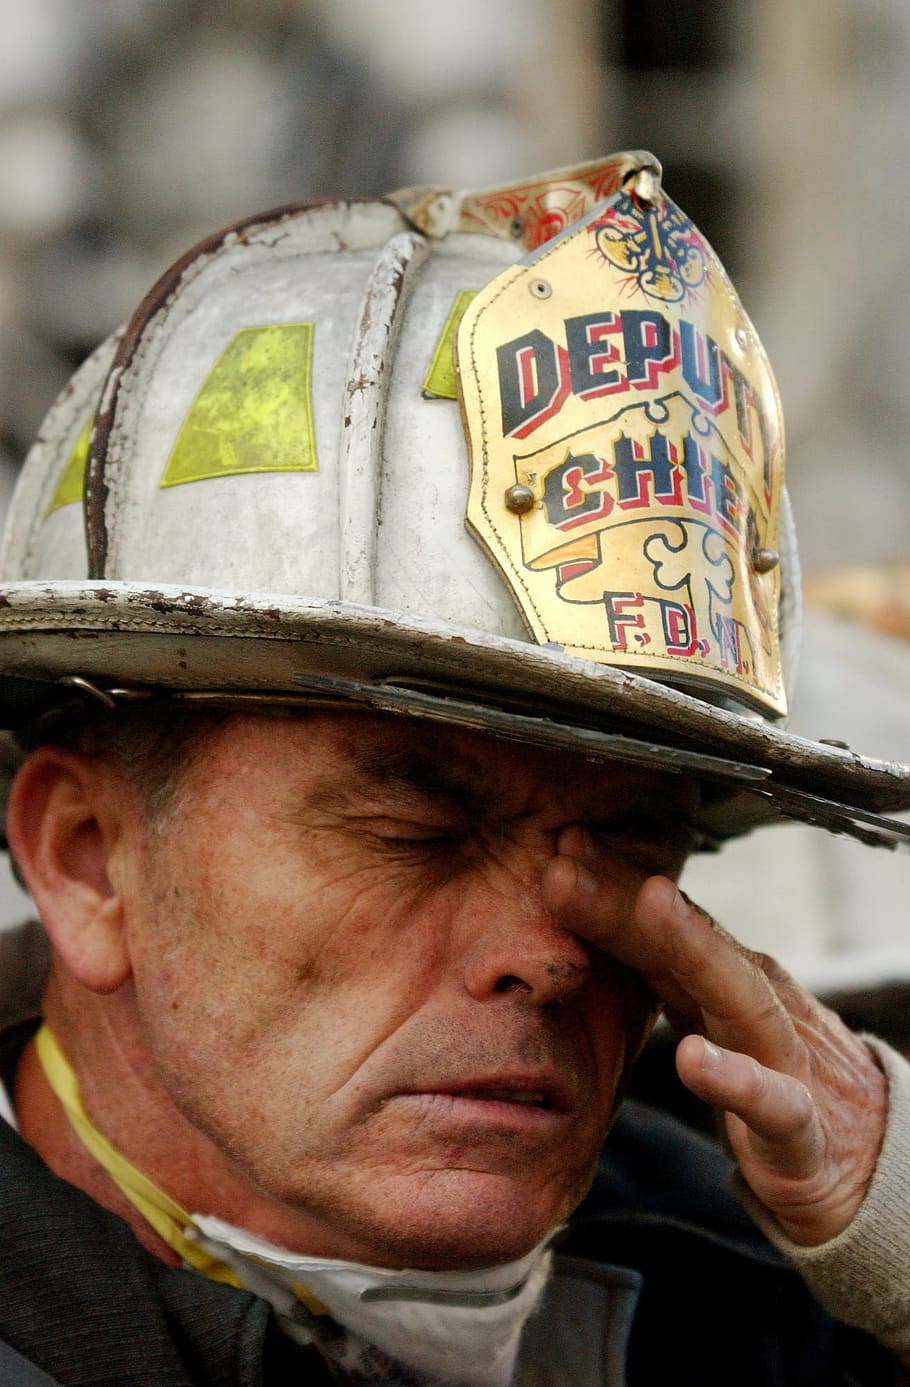 셀카를 복용하는 사람, 소방관, 화재, 9 11, 2001 년 9 월 11 일, 뉴욕시, 남자, 피곤한, 얼굴, 클로즈업